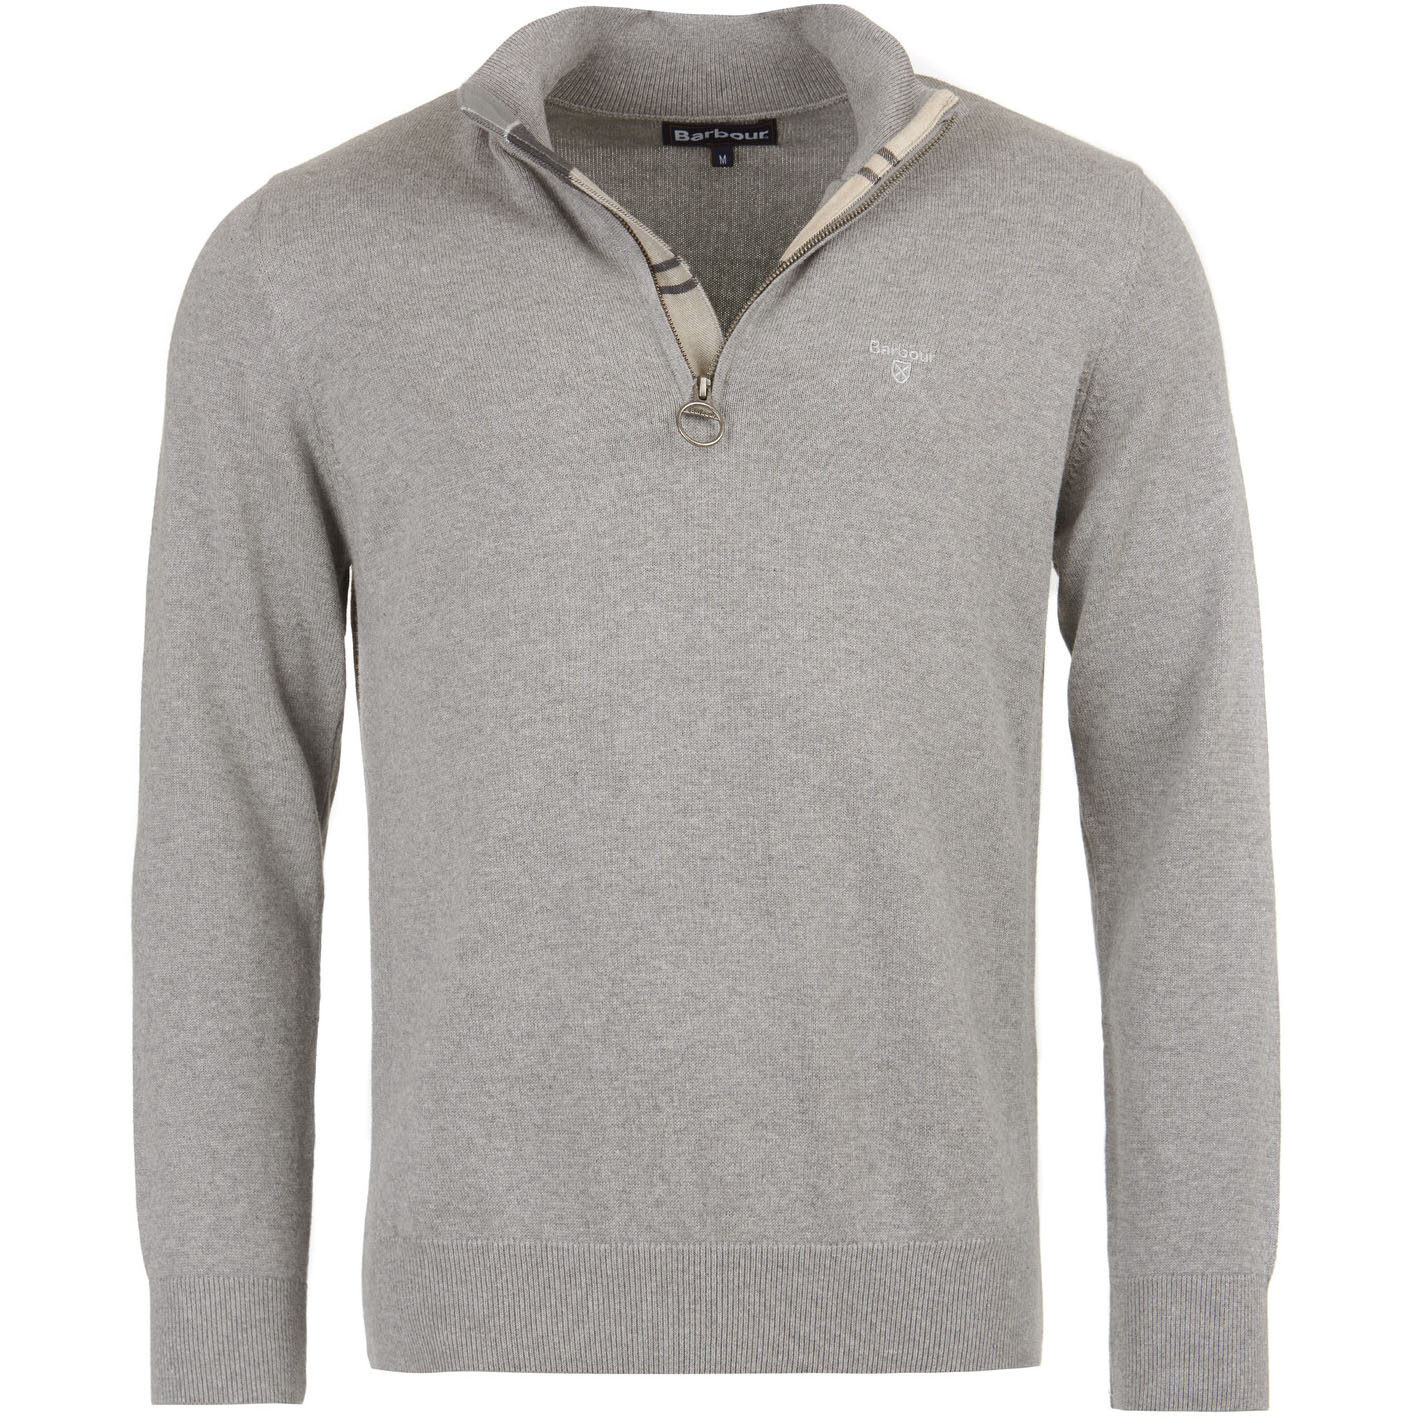 Barbour Men's Cotton Half Zip Sweater - (Grey Marl) | 4